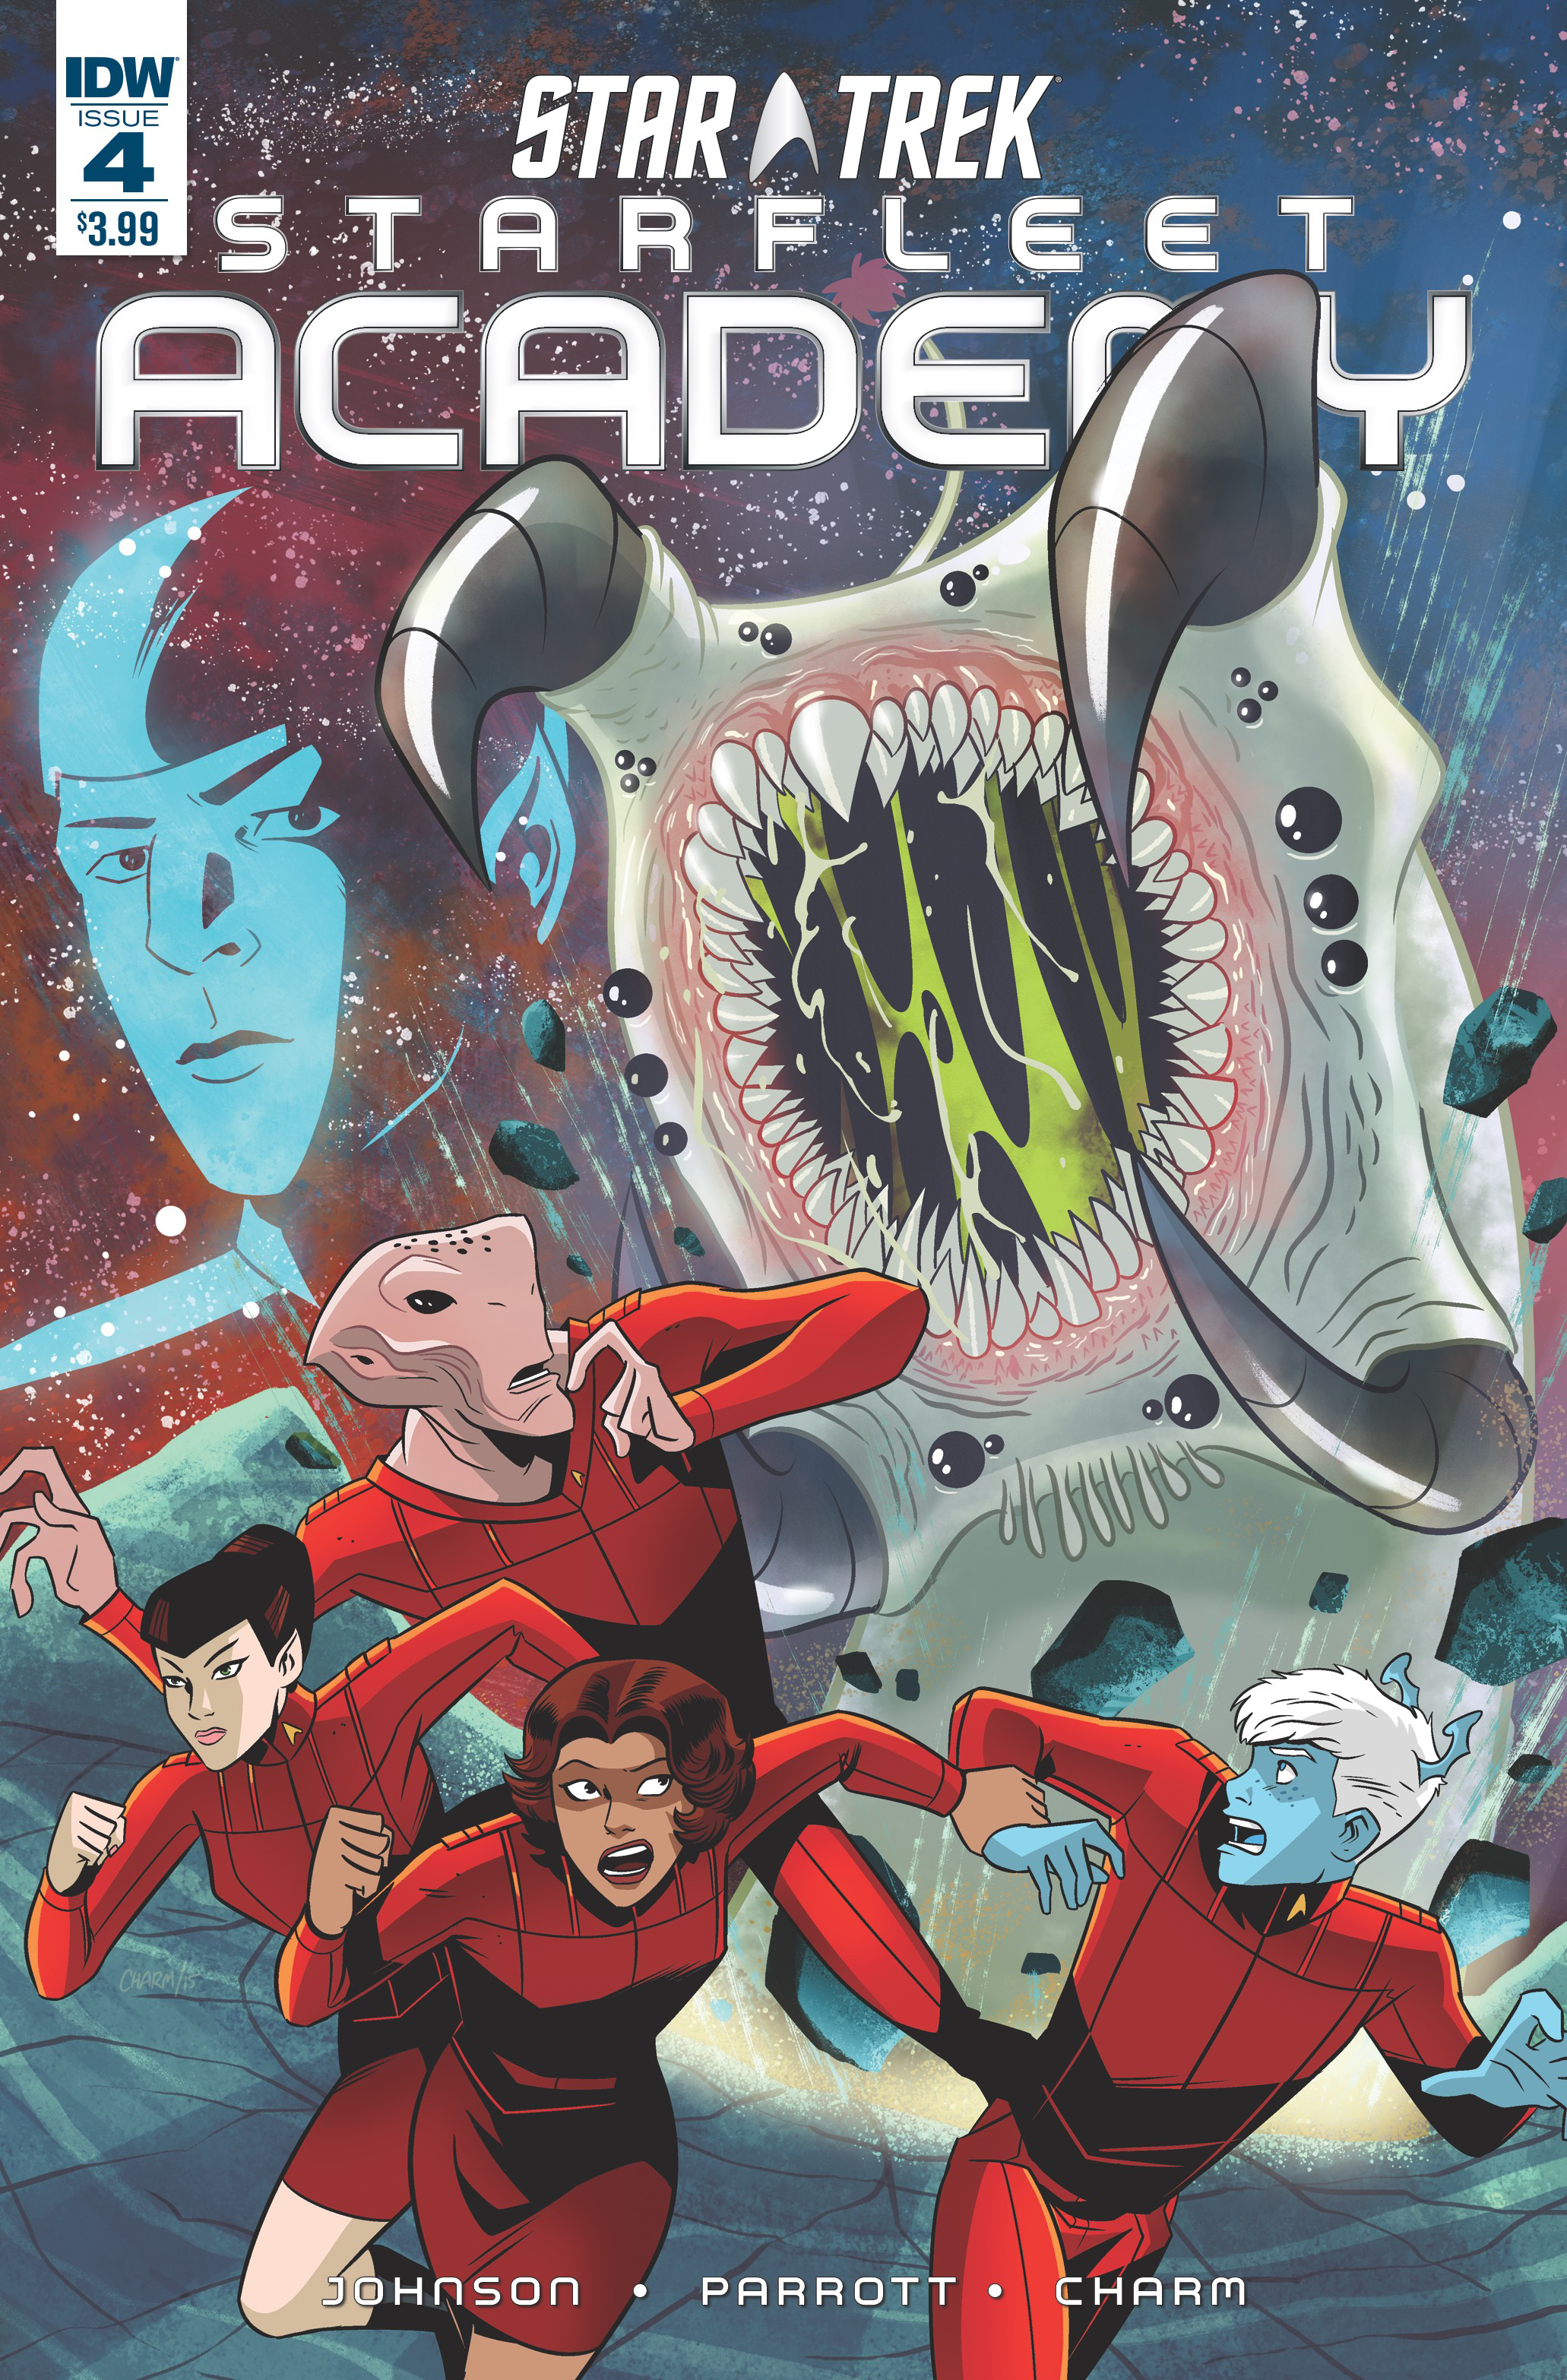 Star Trek: Starfleet Academy (IDW, 2015 series) #4 [Regular Cover]